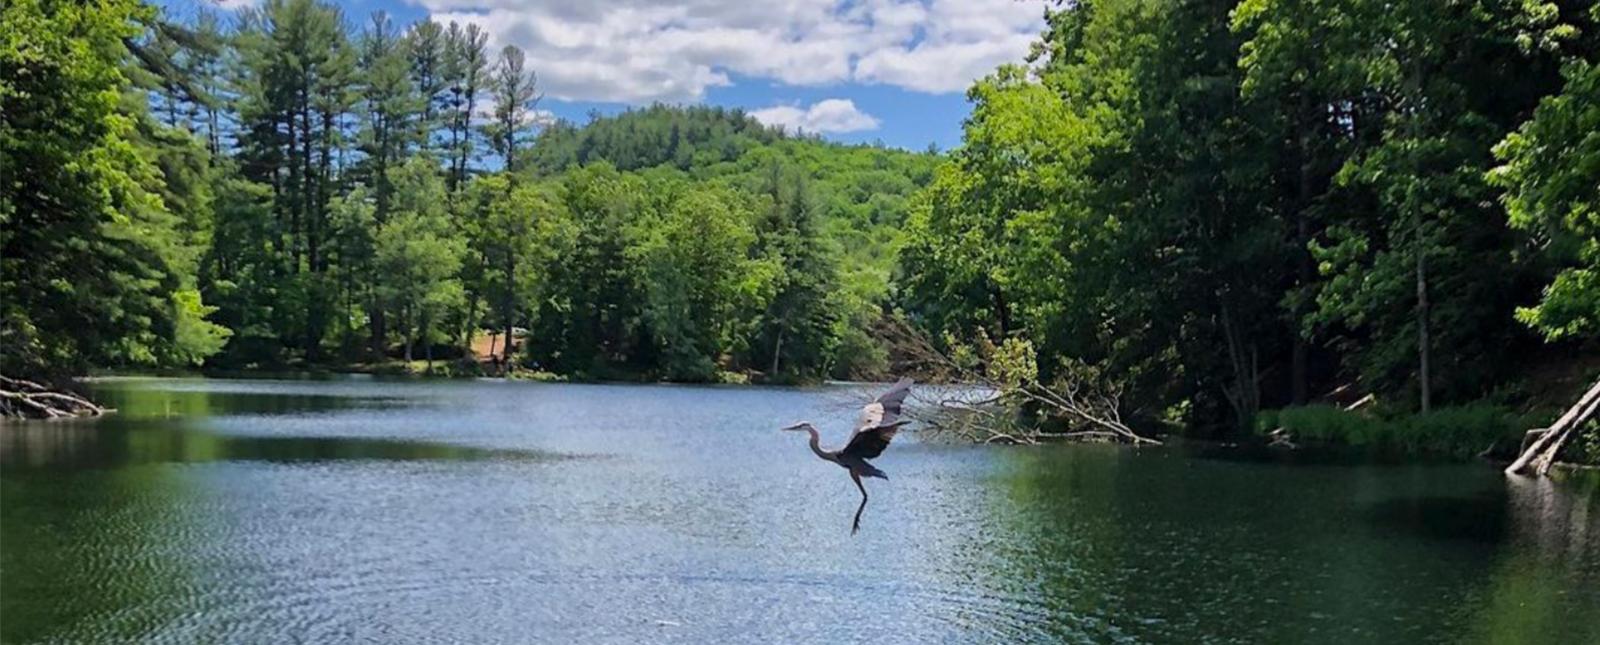 Ave garza volando sobre el agua en el Parque Estatal Black Rock (Instagram@vlawwtravels)